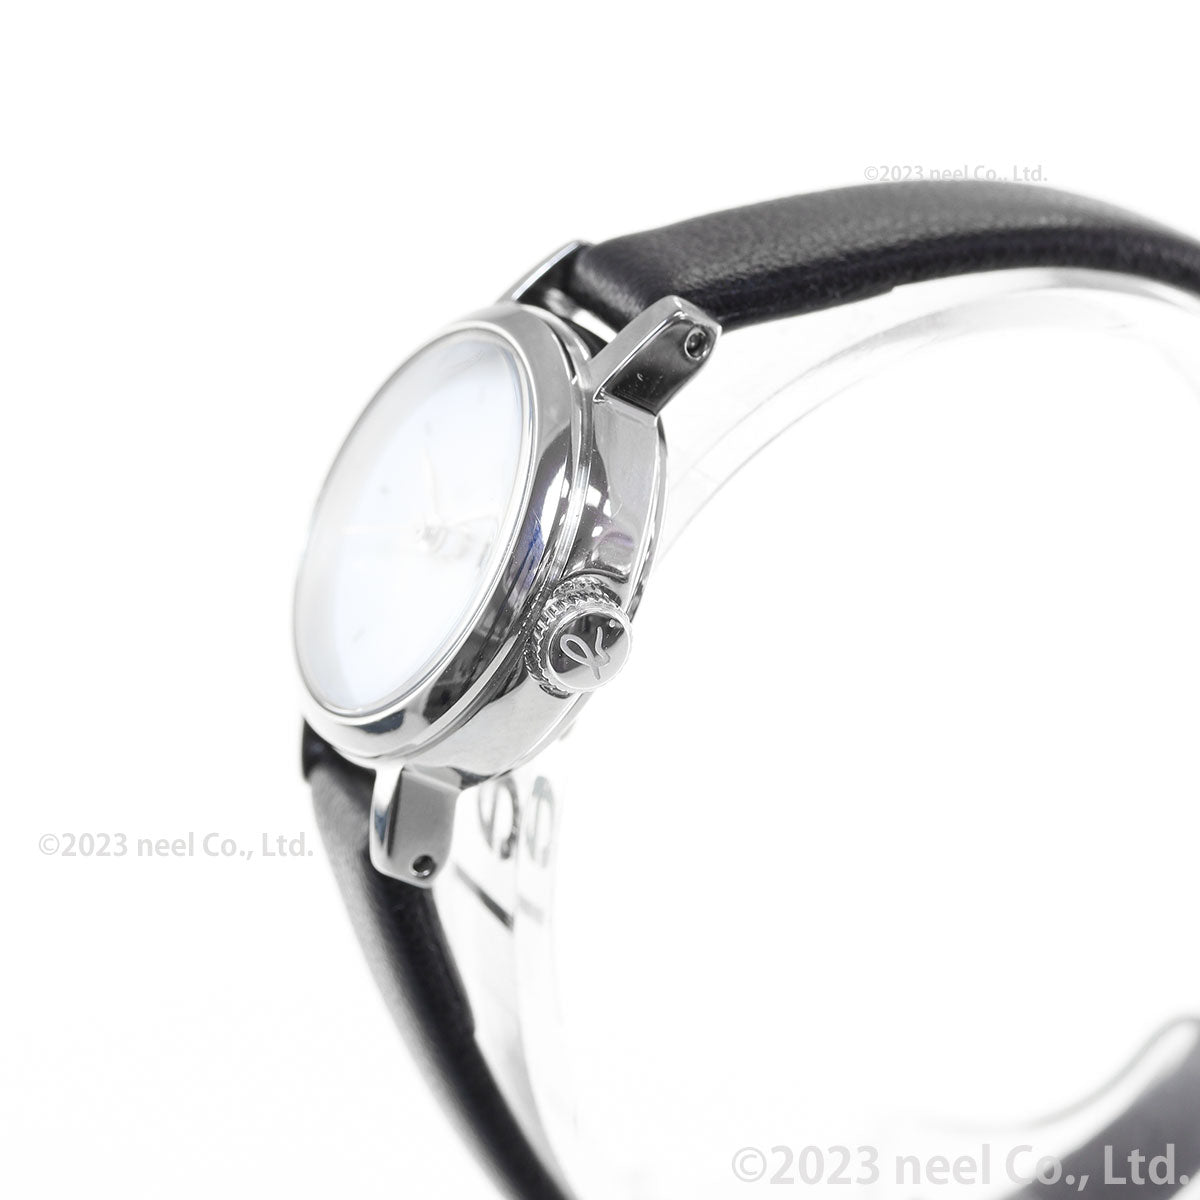 アニエスベー 時計 レディース 限定モデル 腕時計 agnes b. FCSK747